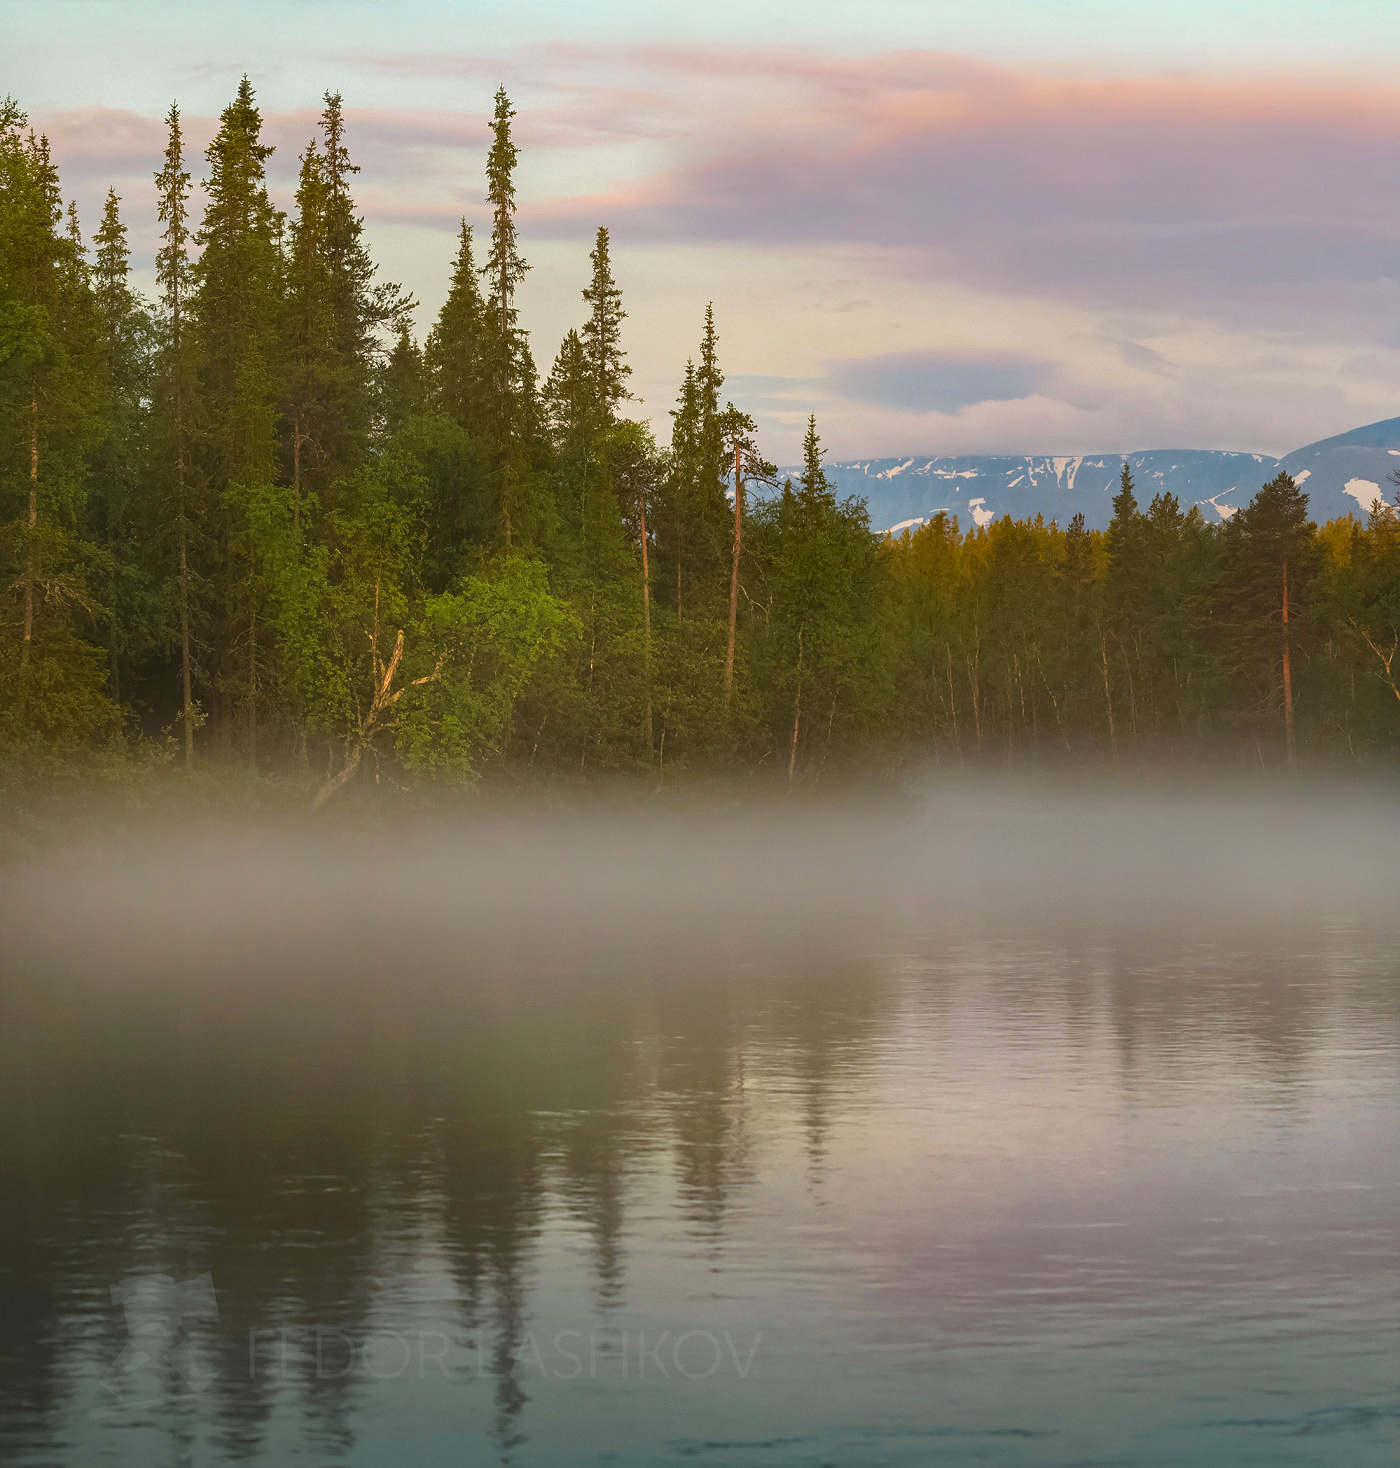 Утро после дождя Хибины горы рассвет тучи облака озеро лето отражение вода туман на берегу деревья